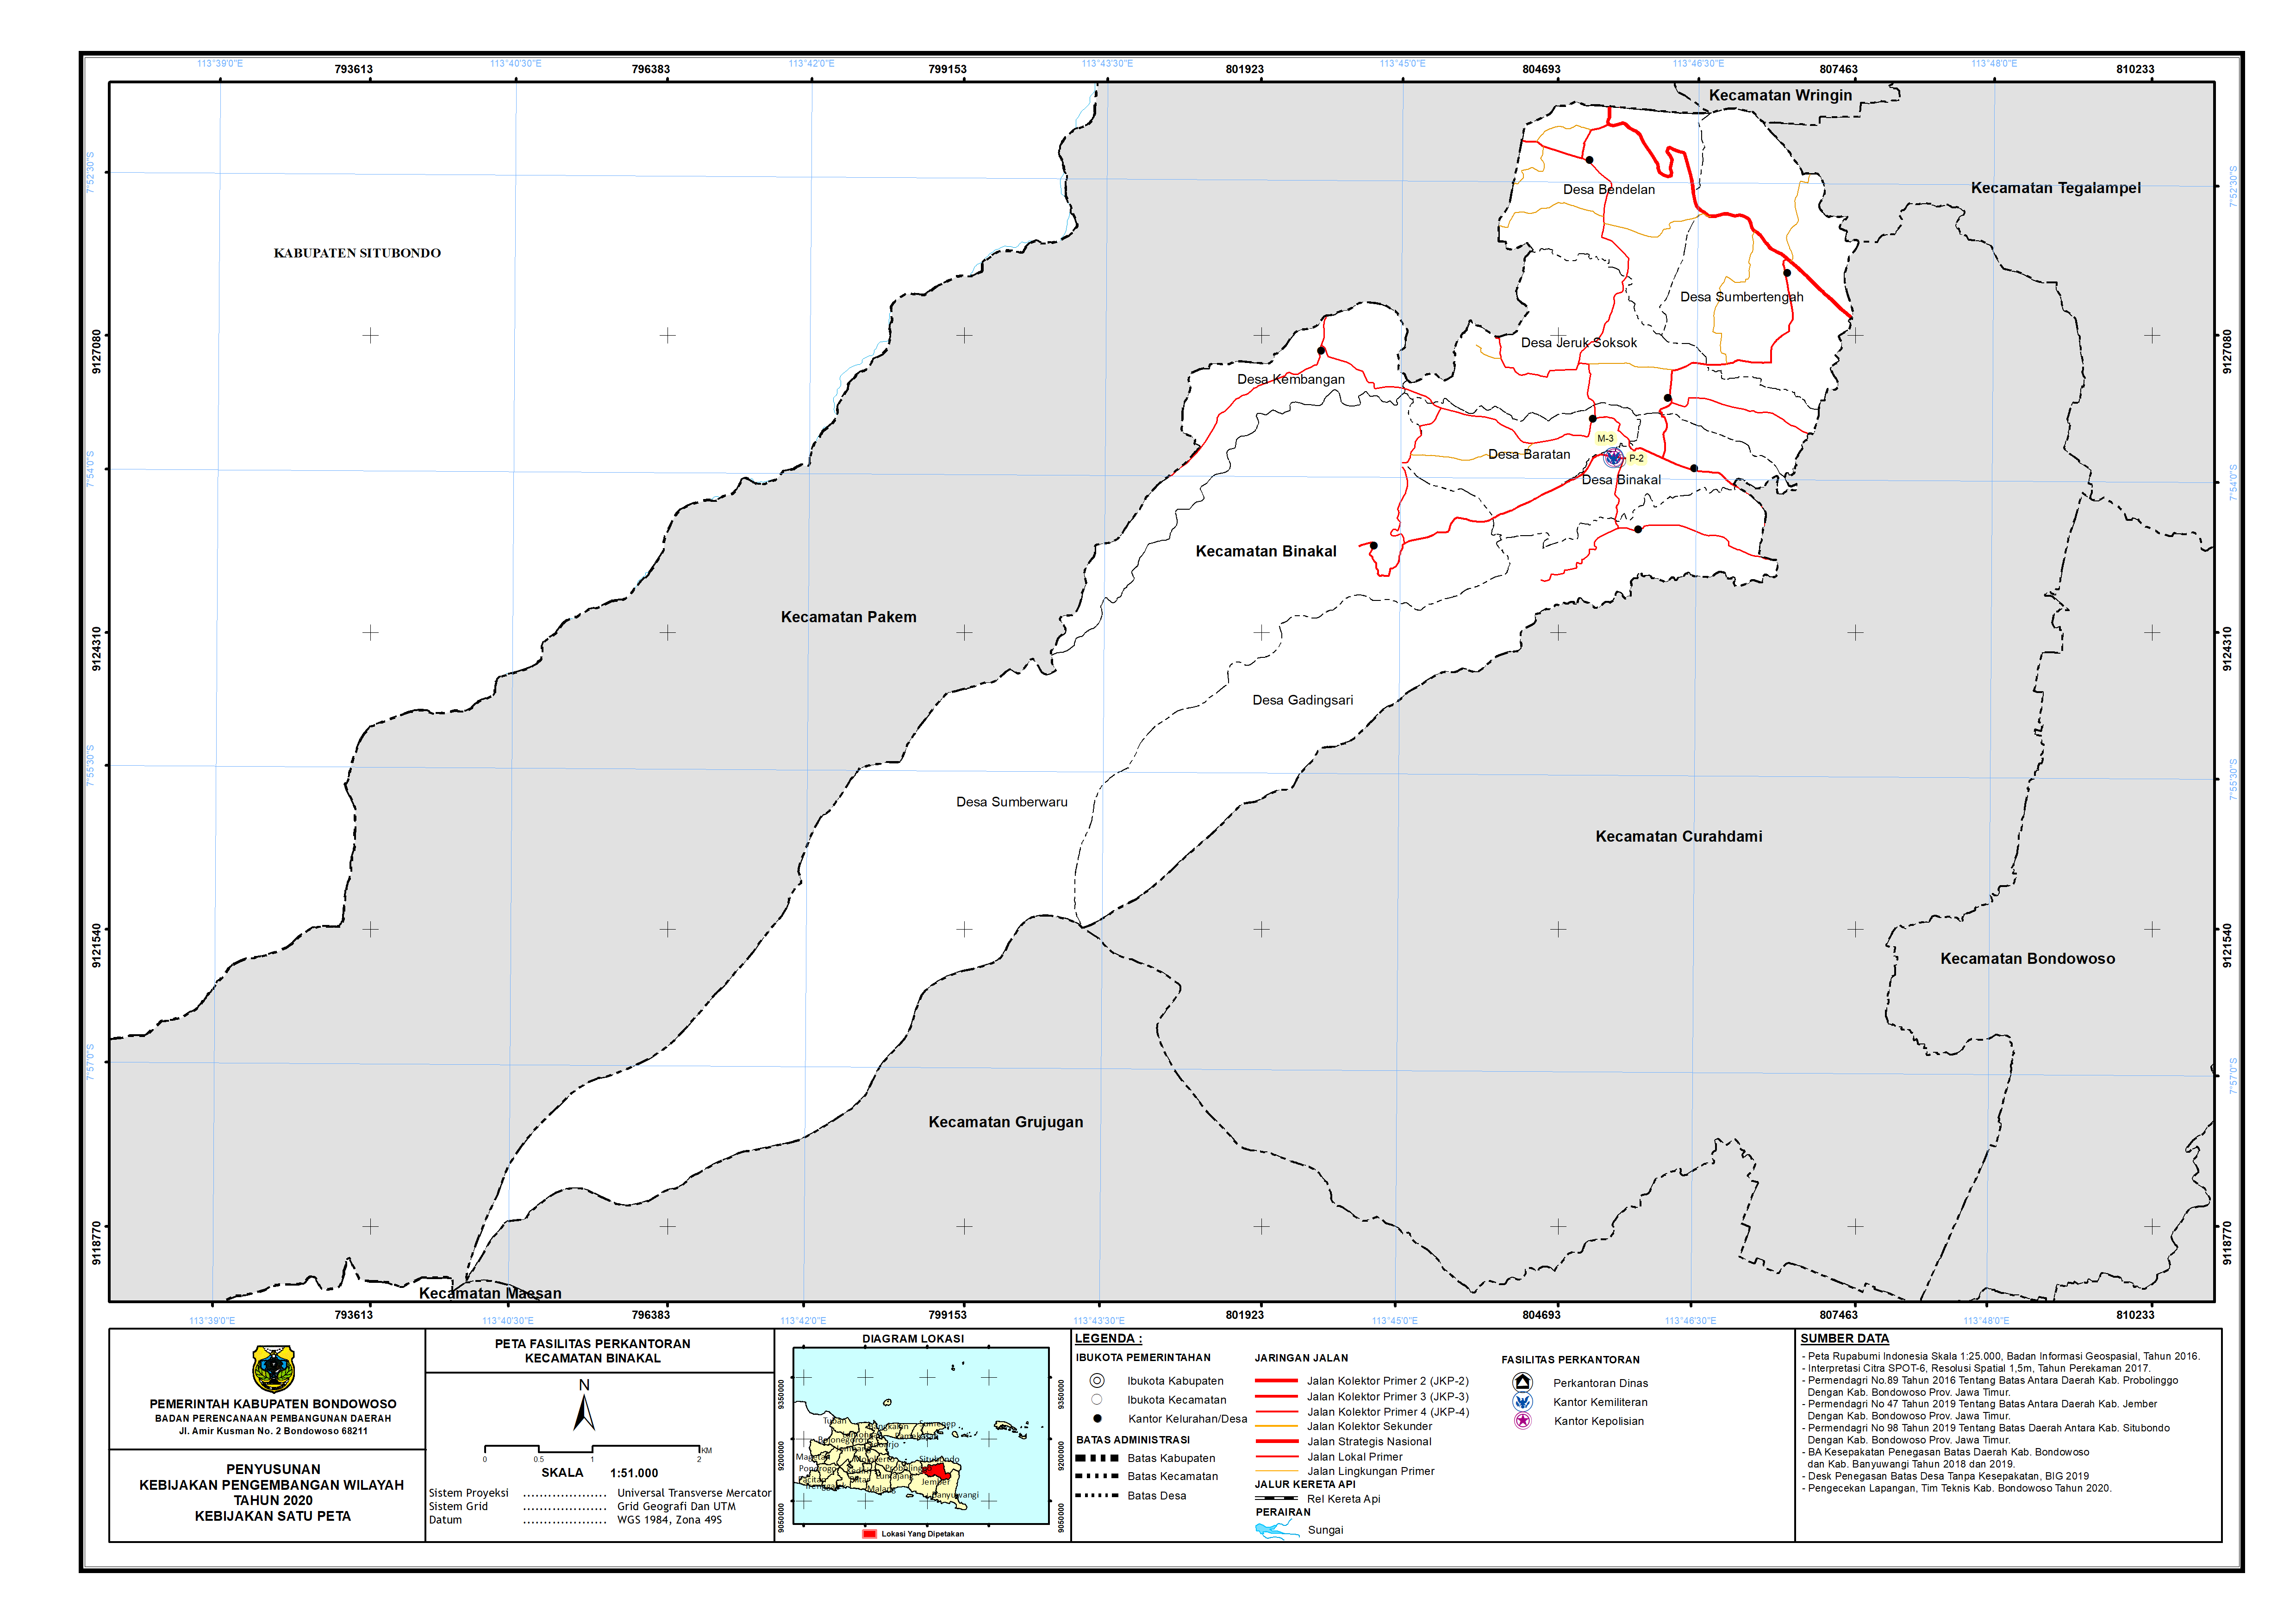 Peta Persebaran Perkantoran Kecamatan Binakal.png